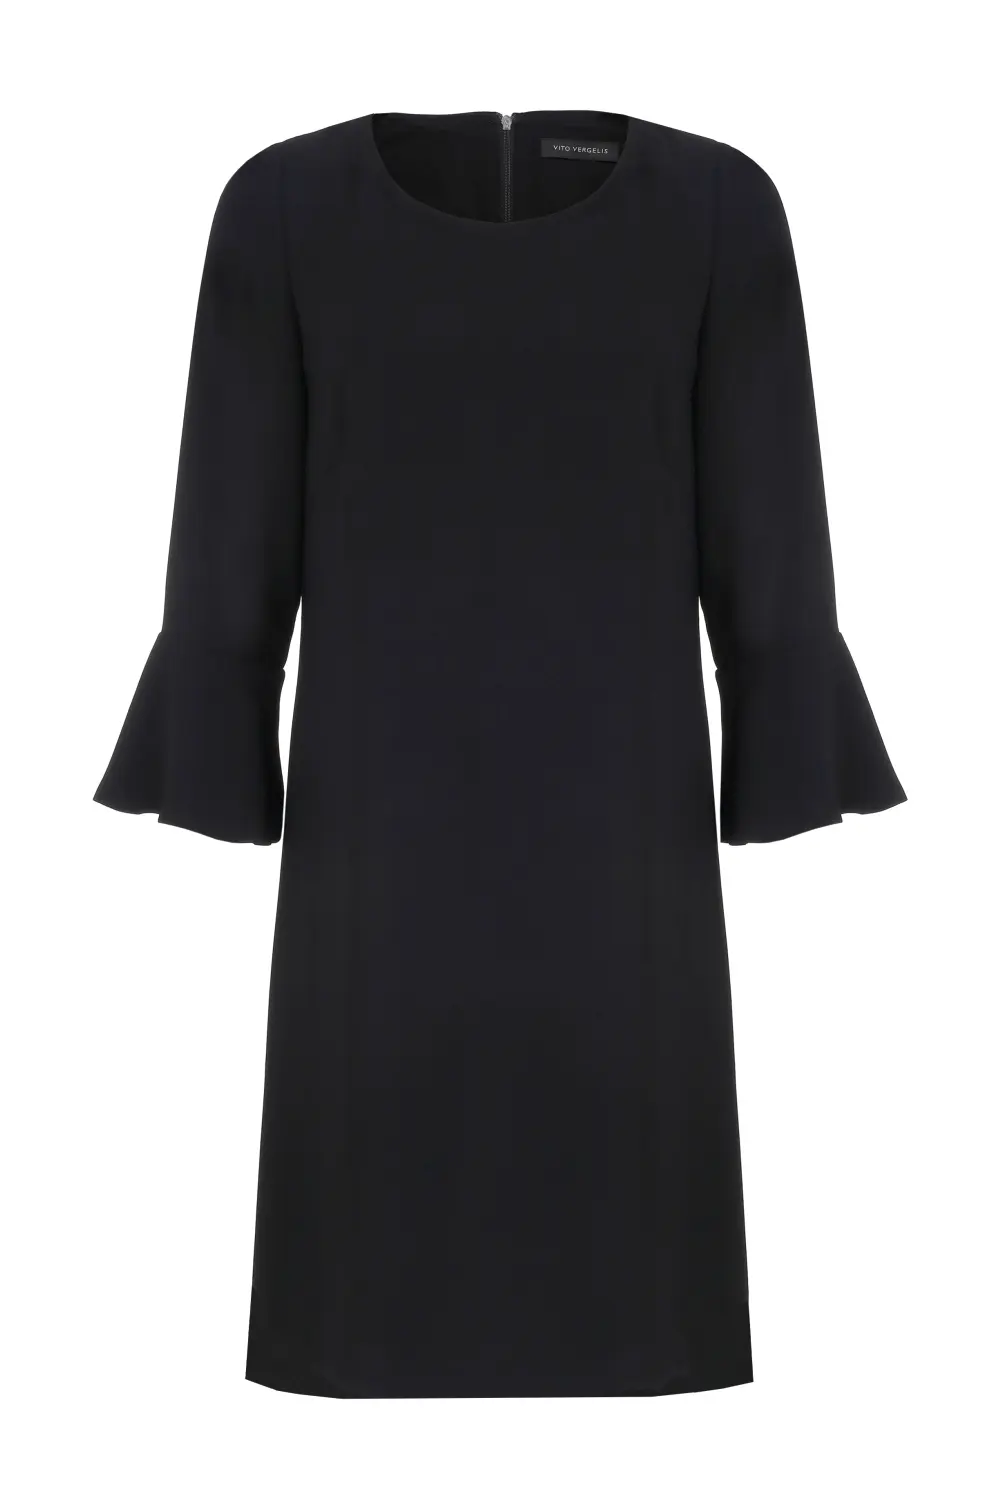 Czarna sukienka luźna z ozdobnym rękawem polska marka Vito Vergelis